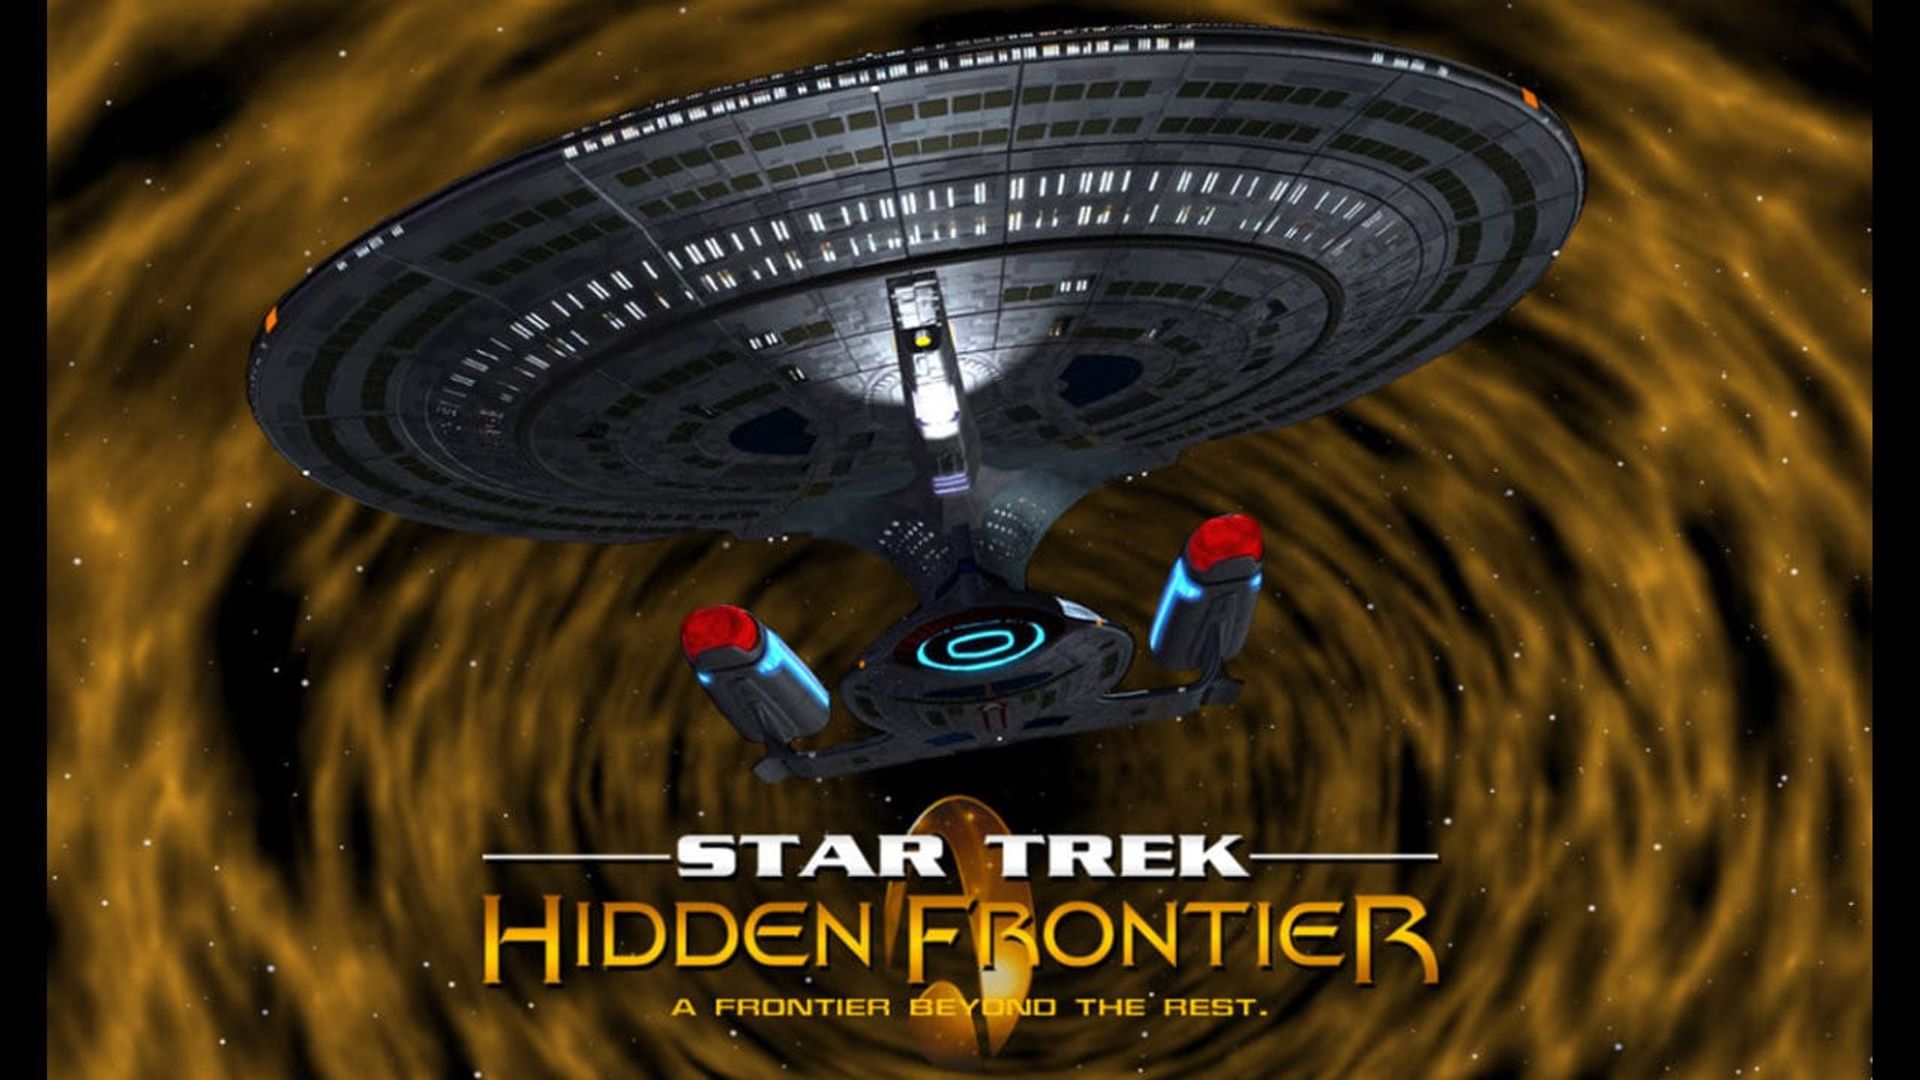 Star Trek: Hidden Frontier background